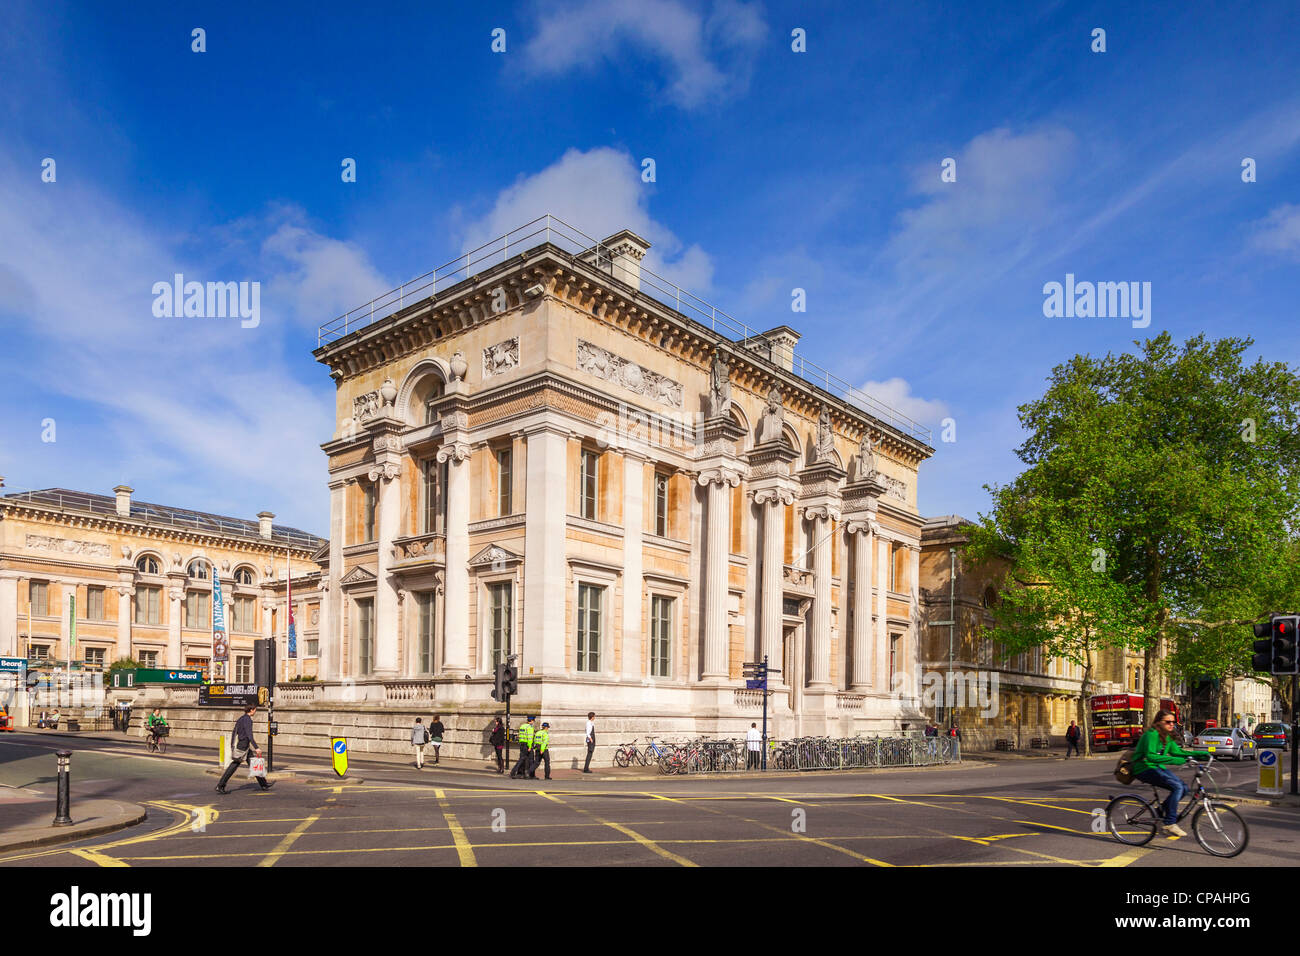 L'Ashmolean Museum d'Oxford, qui a été la première université du monde Musée. Banque D'Images